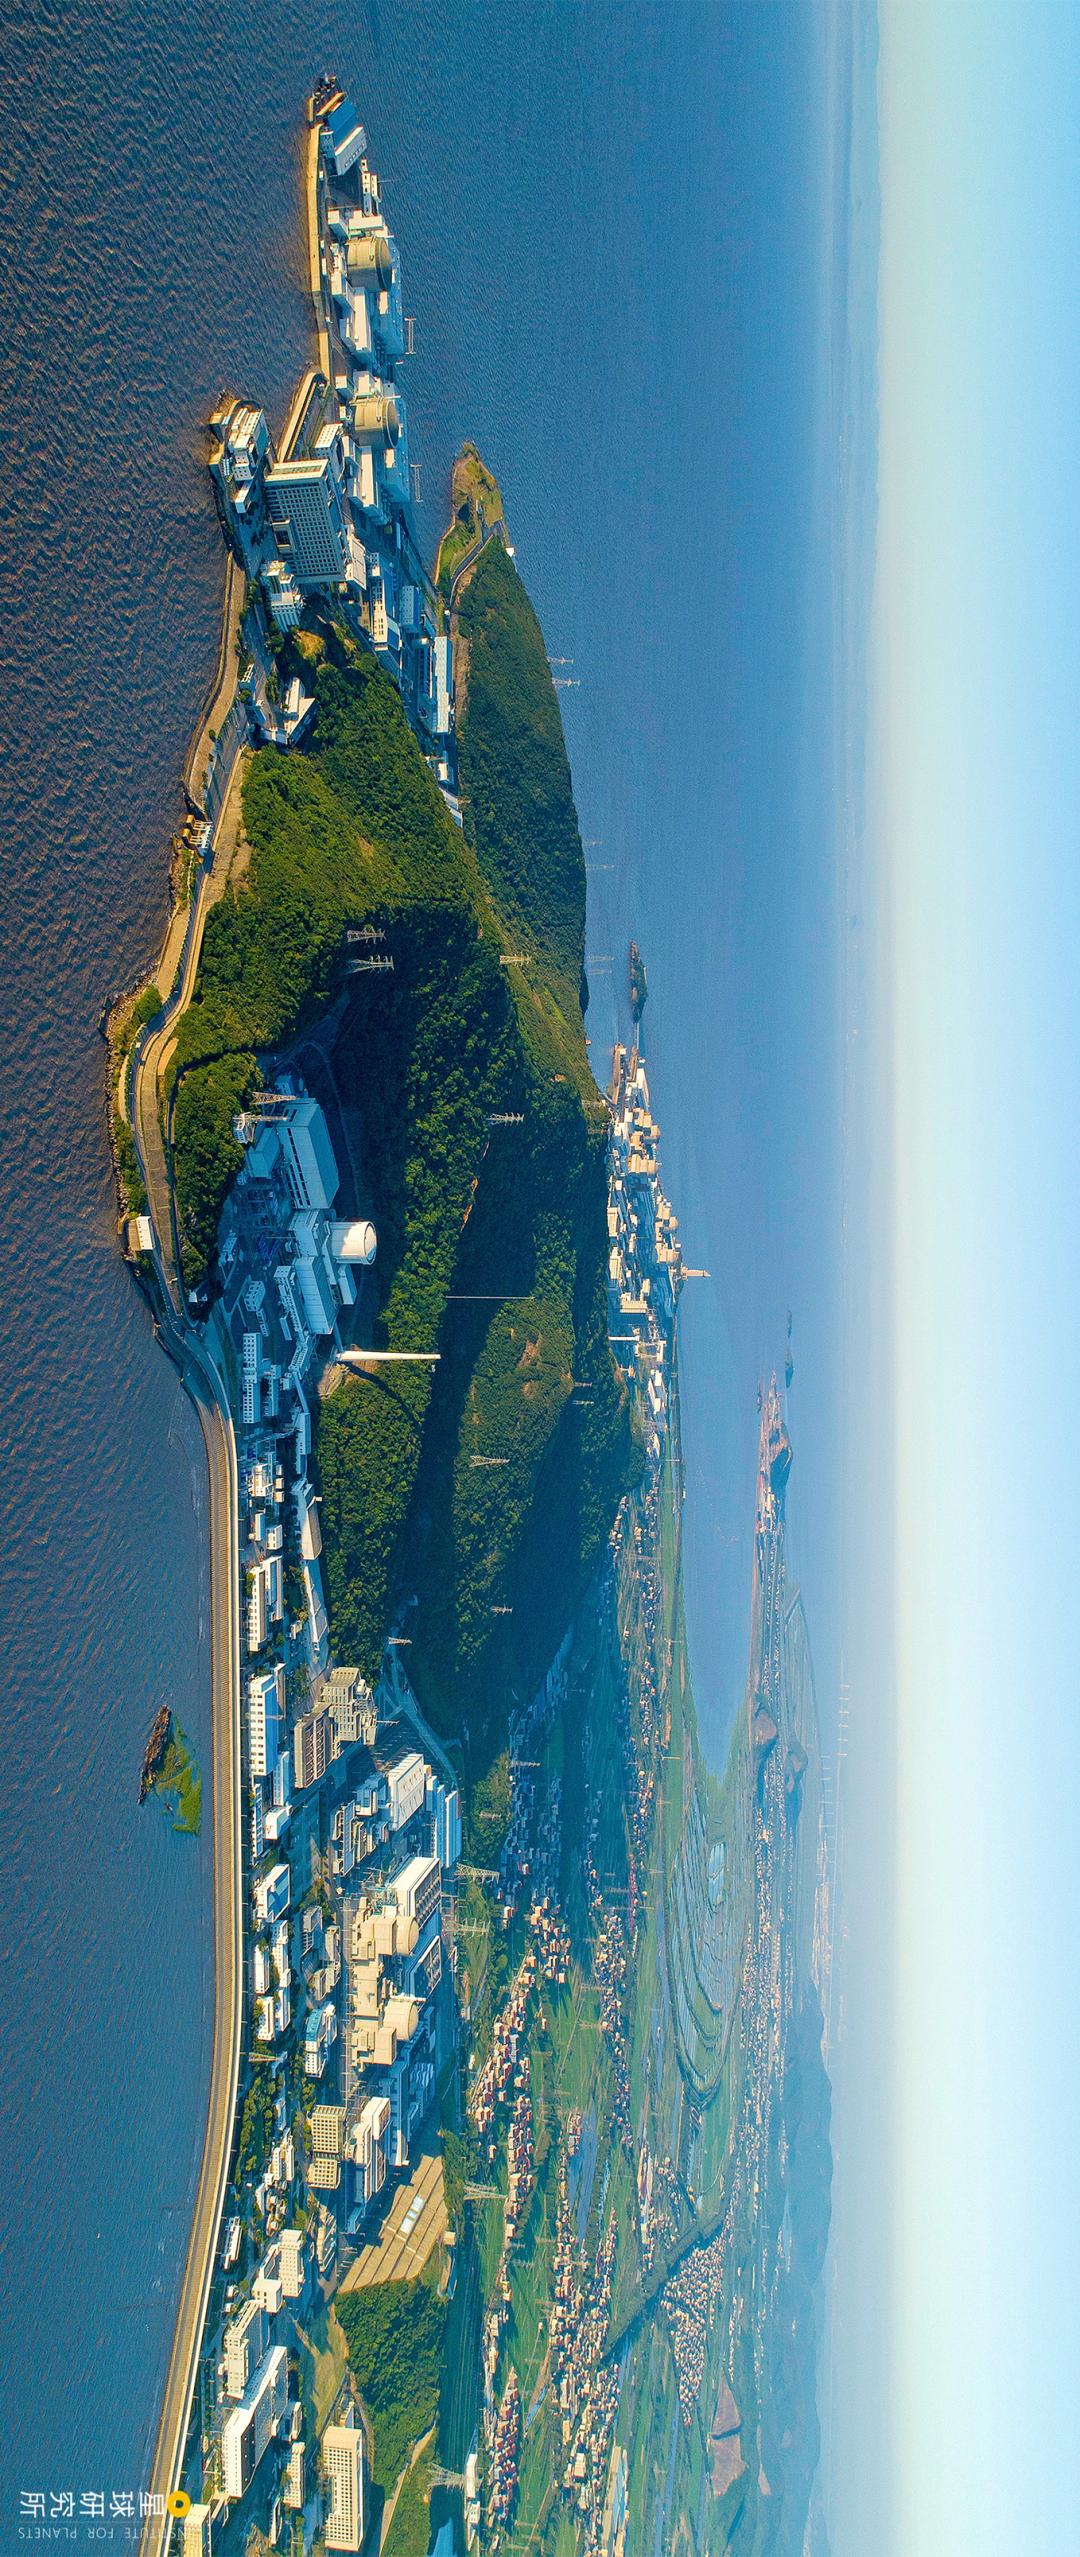 从几乎完全依赖进口的广东大亚湾核电站(广东大亚湾核电站,1993年建成